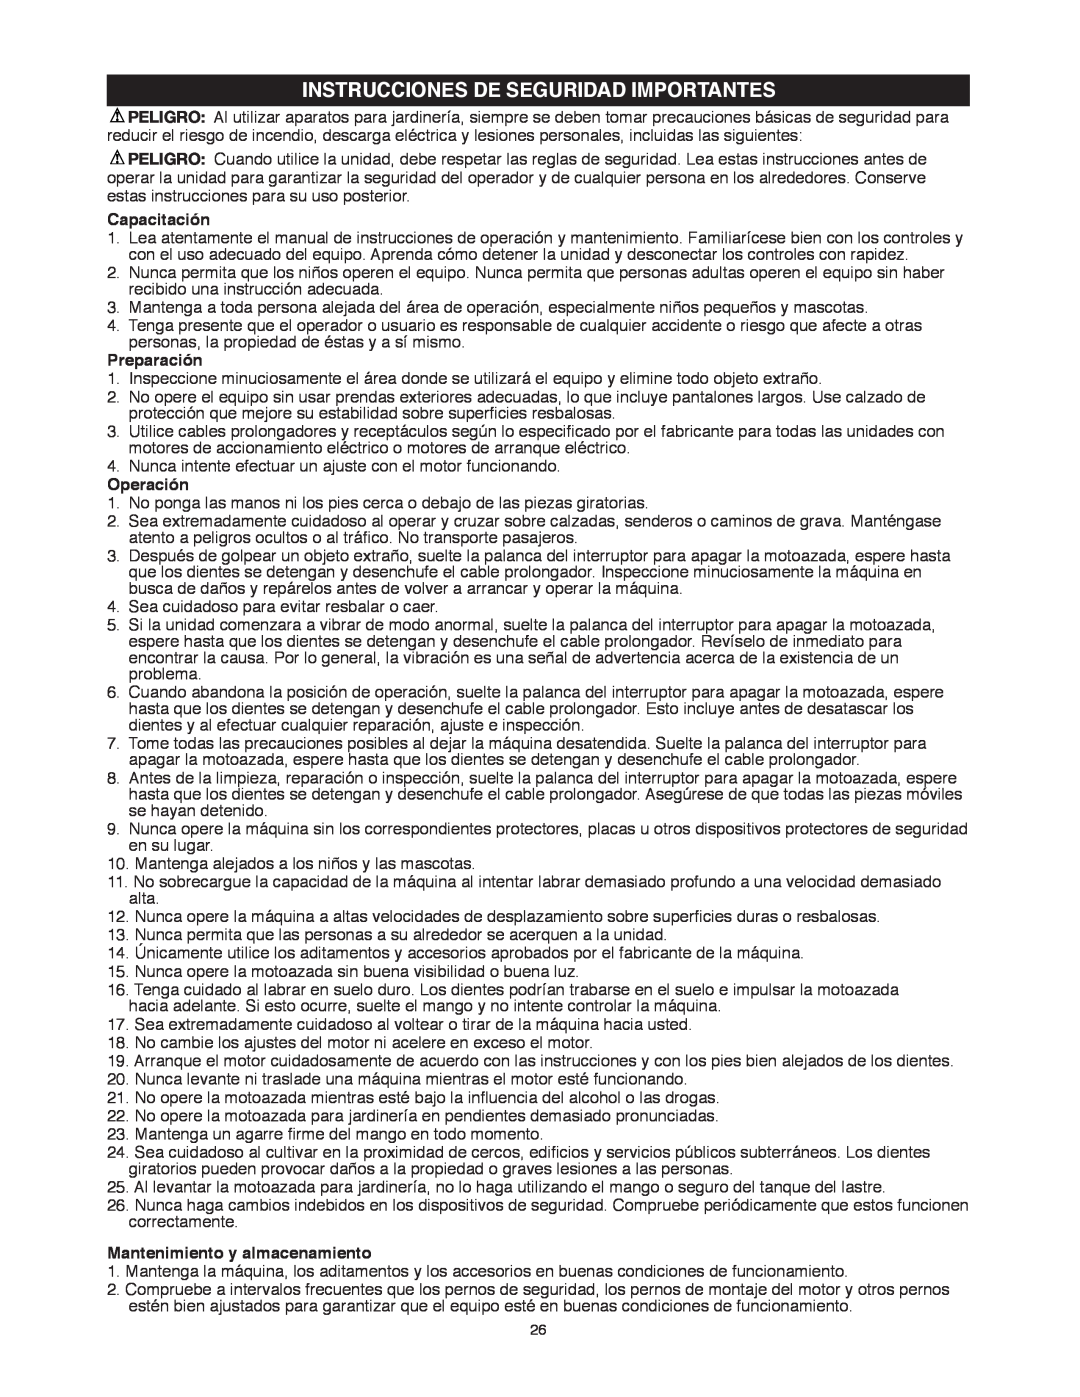 Black & Decker TL10 instruction manual Instrucciones De Seguridad Importantes, Capacitación, Preparación, Operación 